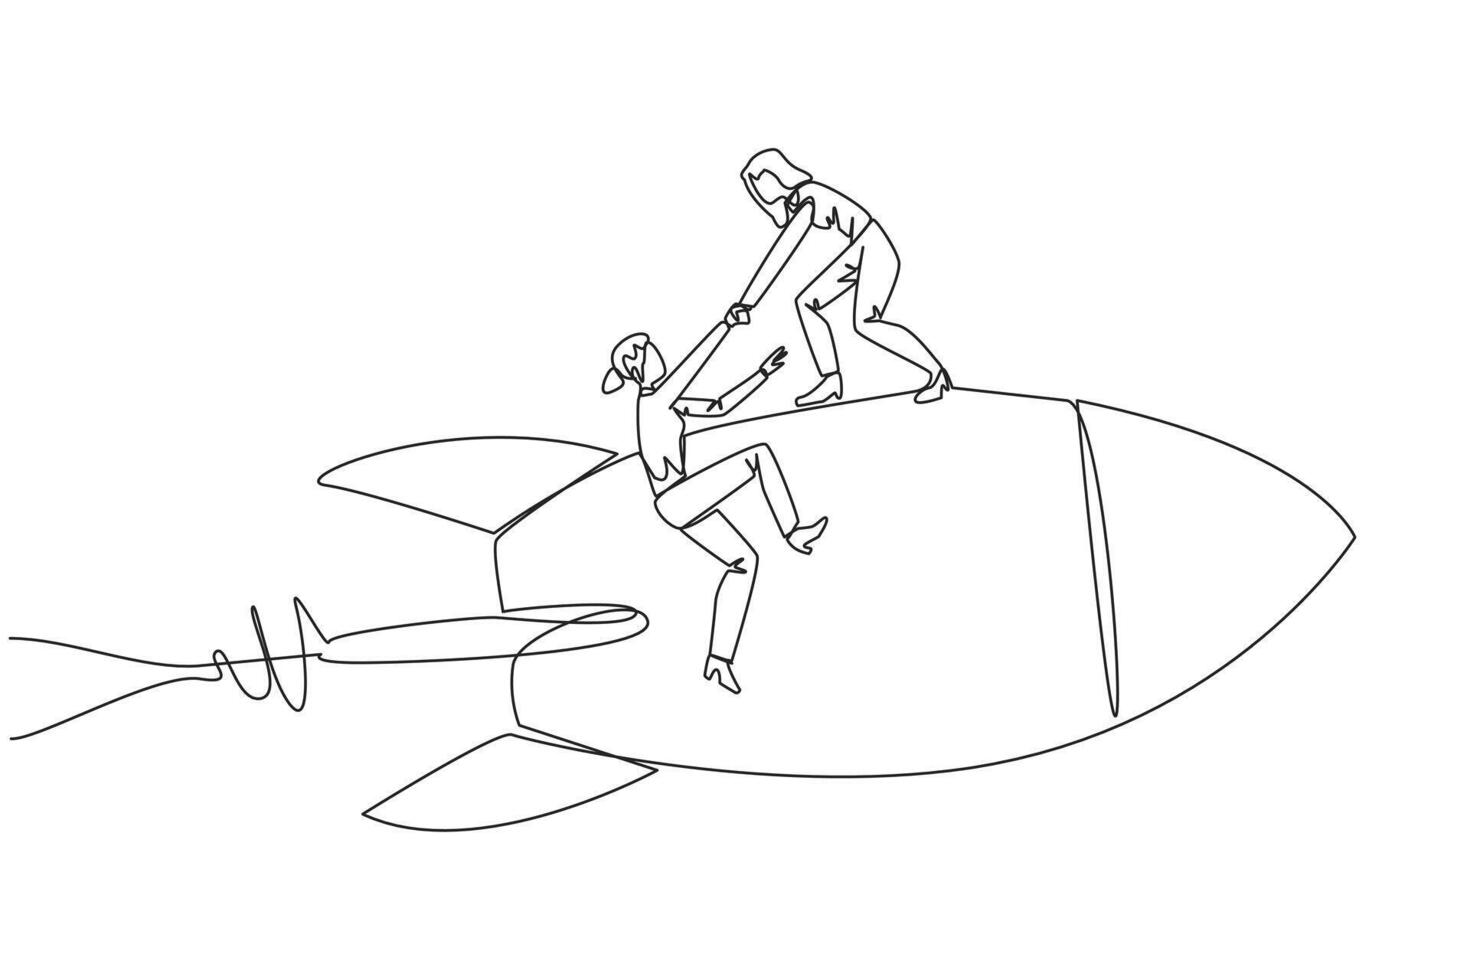 Single kontinuierlich Linie Zeichnung Geschäftsfrau hilft Kollege steigen fliegend Rakete. Metapher Hilfe im Verwaltung Unternehmen Geäst. in die Höhe geschossen mögen das Bisherige Geschäft. einer Linie Illustration vektor